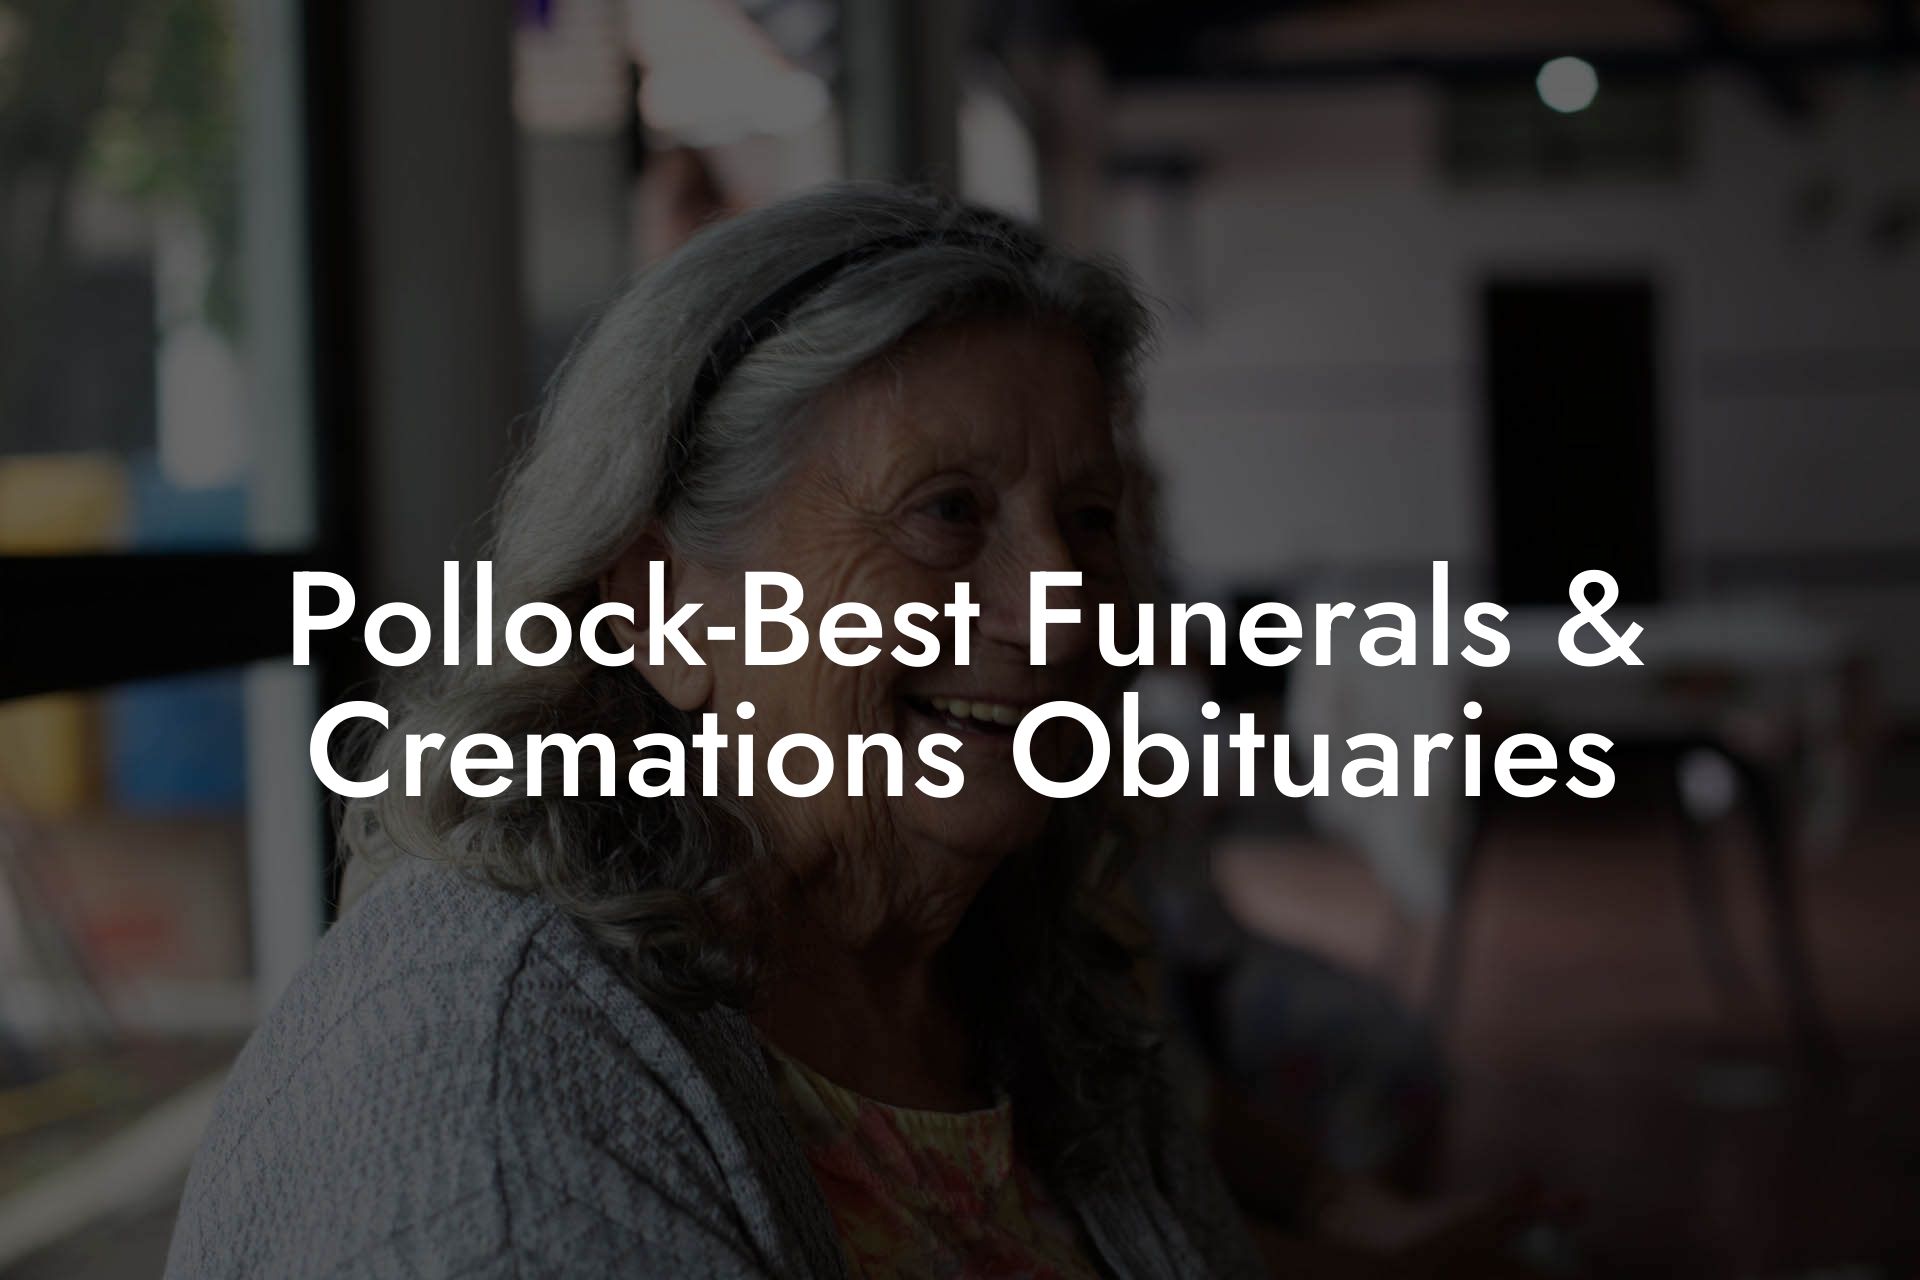 Pollock-Best Funerals & Cremations Obituaries